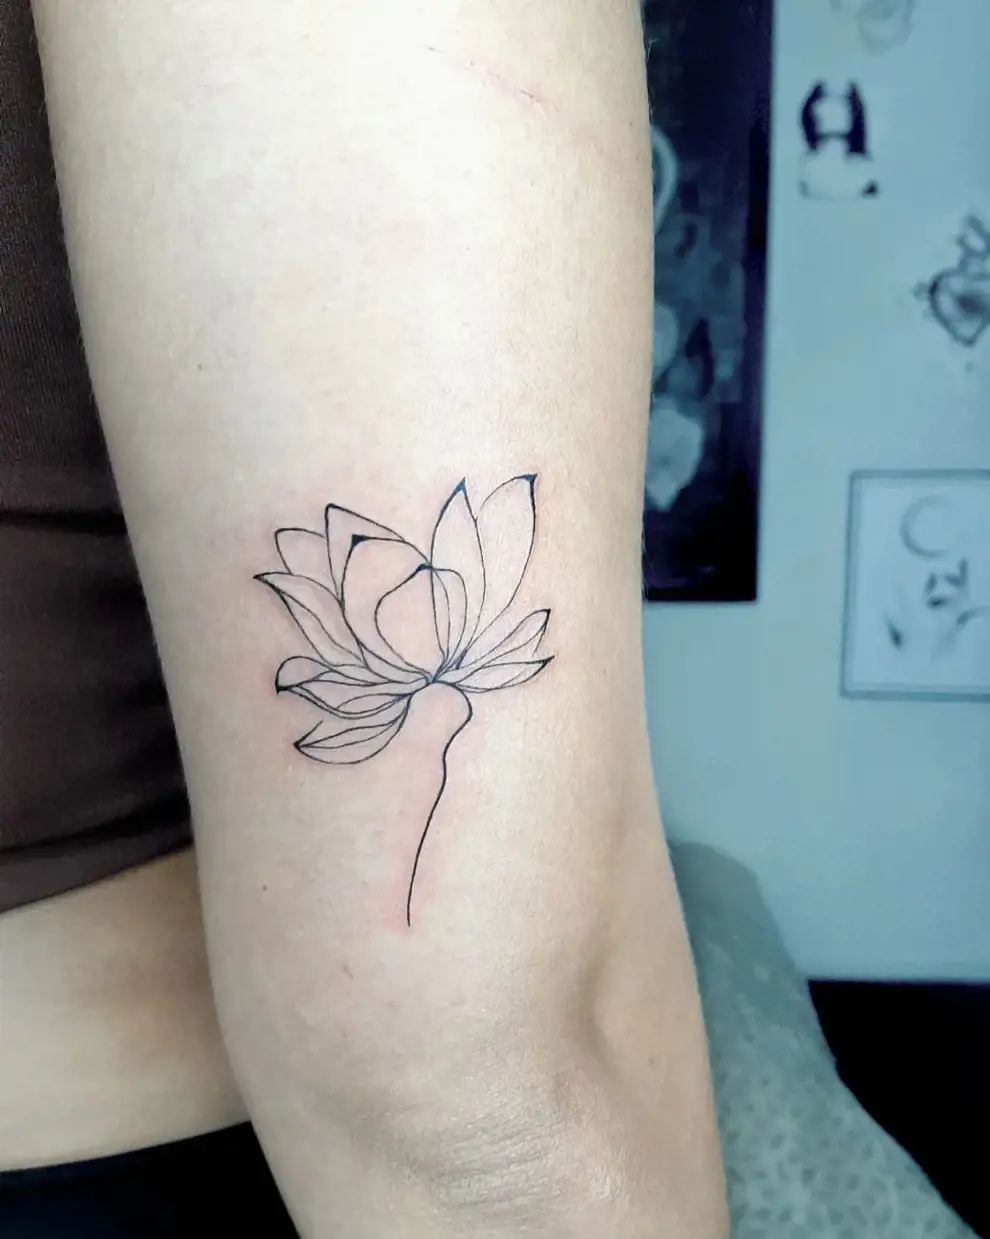 Tatuaje flor de loto: one line